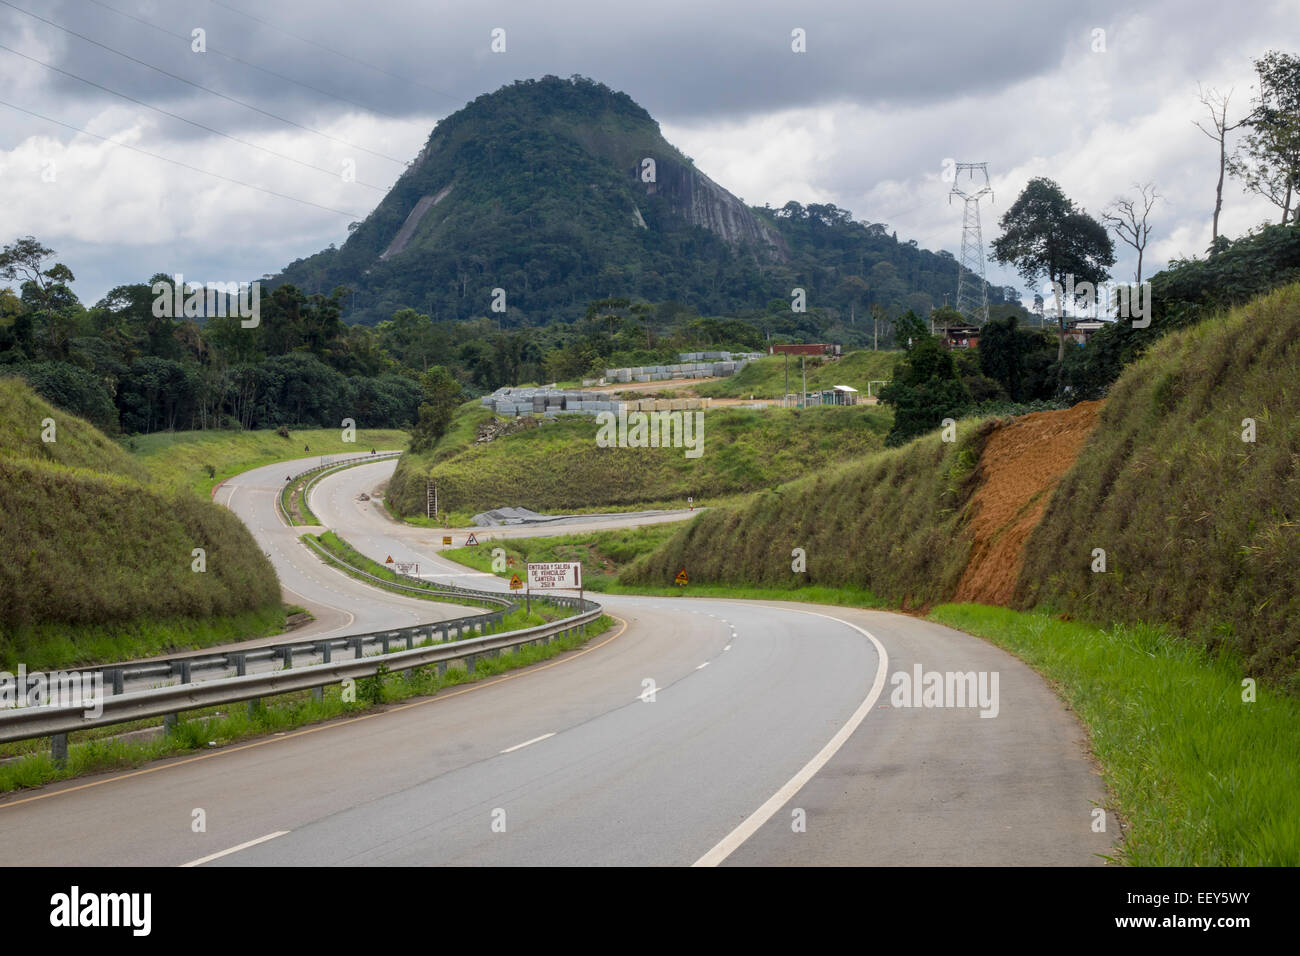 Infrastrutture in Africa occidentale - moderna autostrada passato montagne sul modo per la nuova città capitale di Oyala, Guinea equatoriale Foto Stock